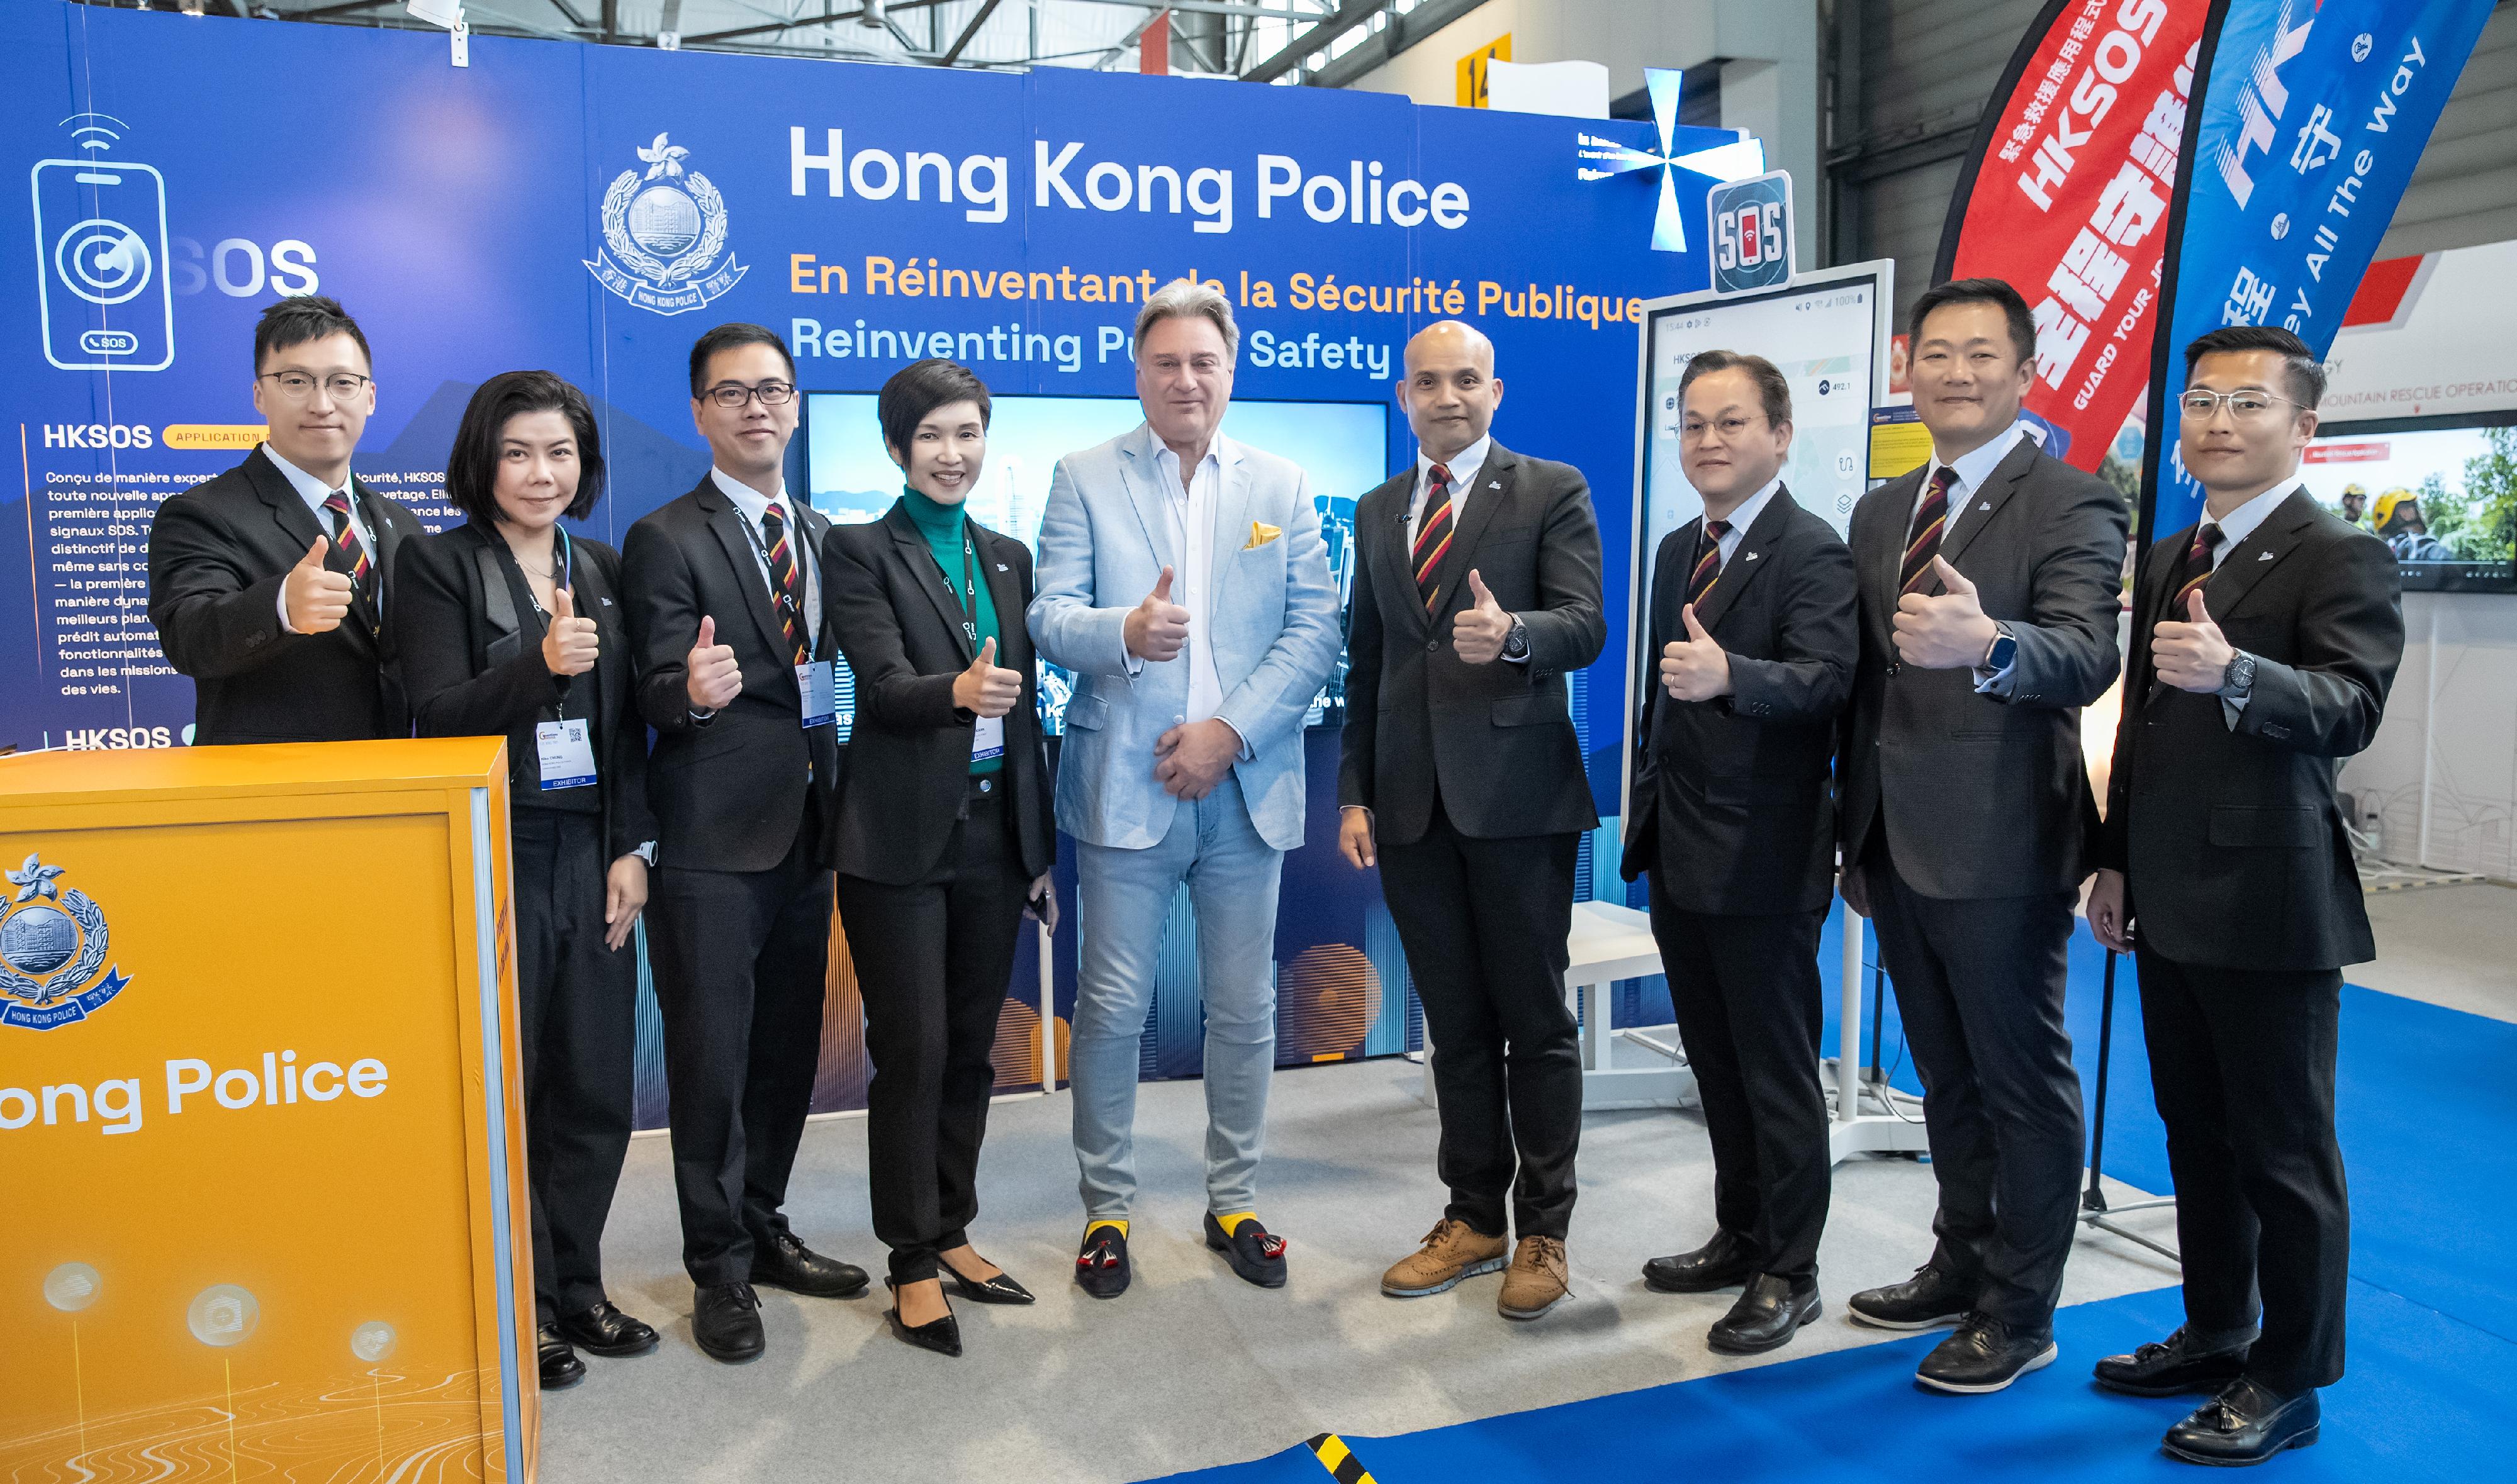 香港警务处资讯系统部人员四月十七日至二十一日在瑞士日内瓦参与第四十九届日内瓦国际发明展。日内瓦国际发明展评判团主席David Taji（中）对香港警察技术项目的水平及创造力给予高度评价及肯定。